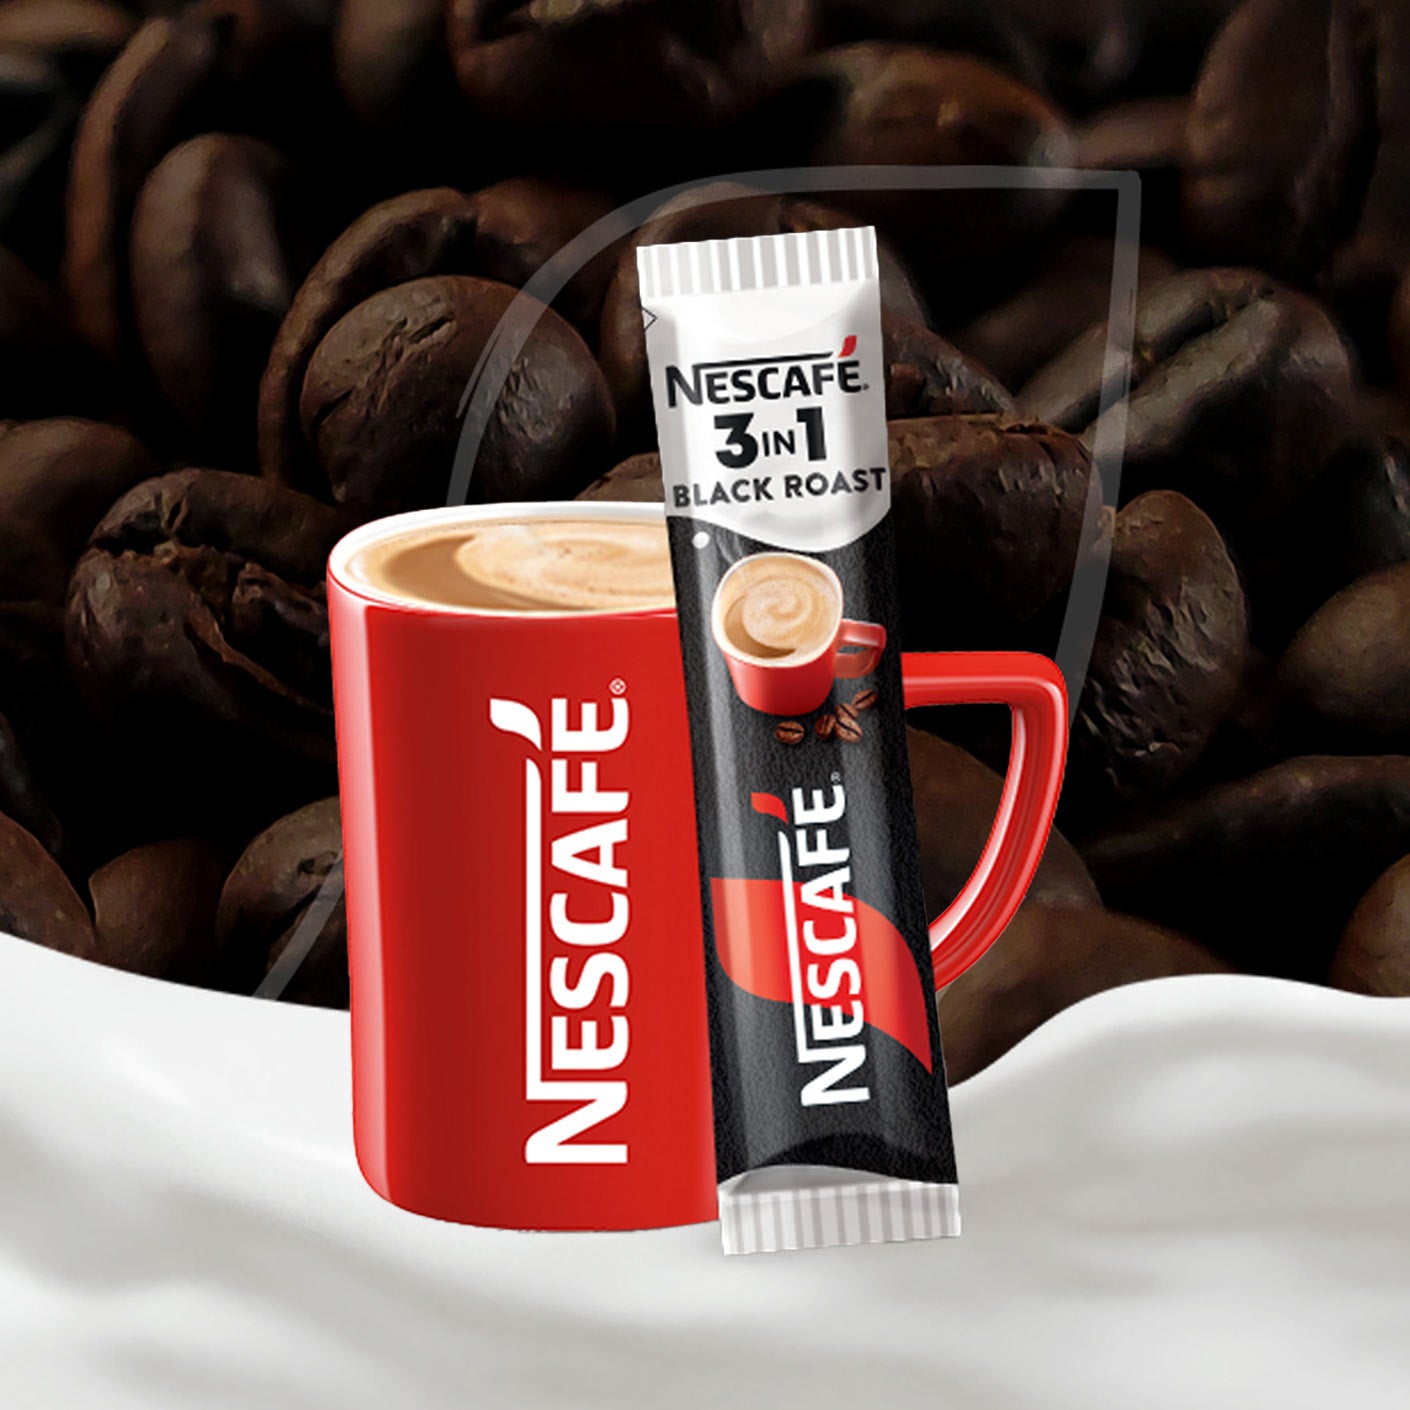 Червена чаша NESCAFE и пакетче NESCAFE 3in1 Black Roast, на заден фон кафе и млечна вълна